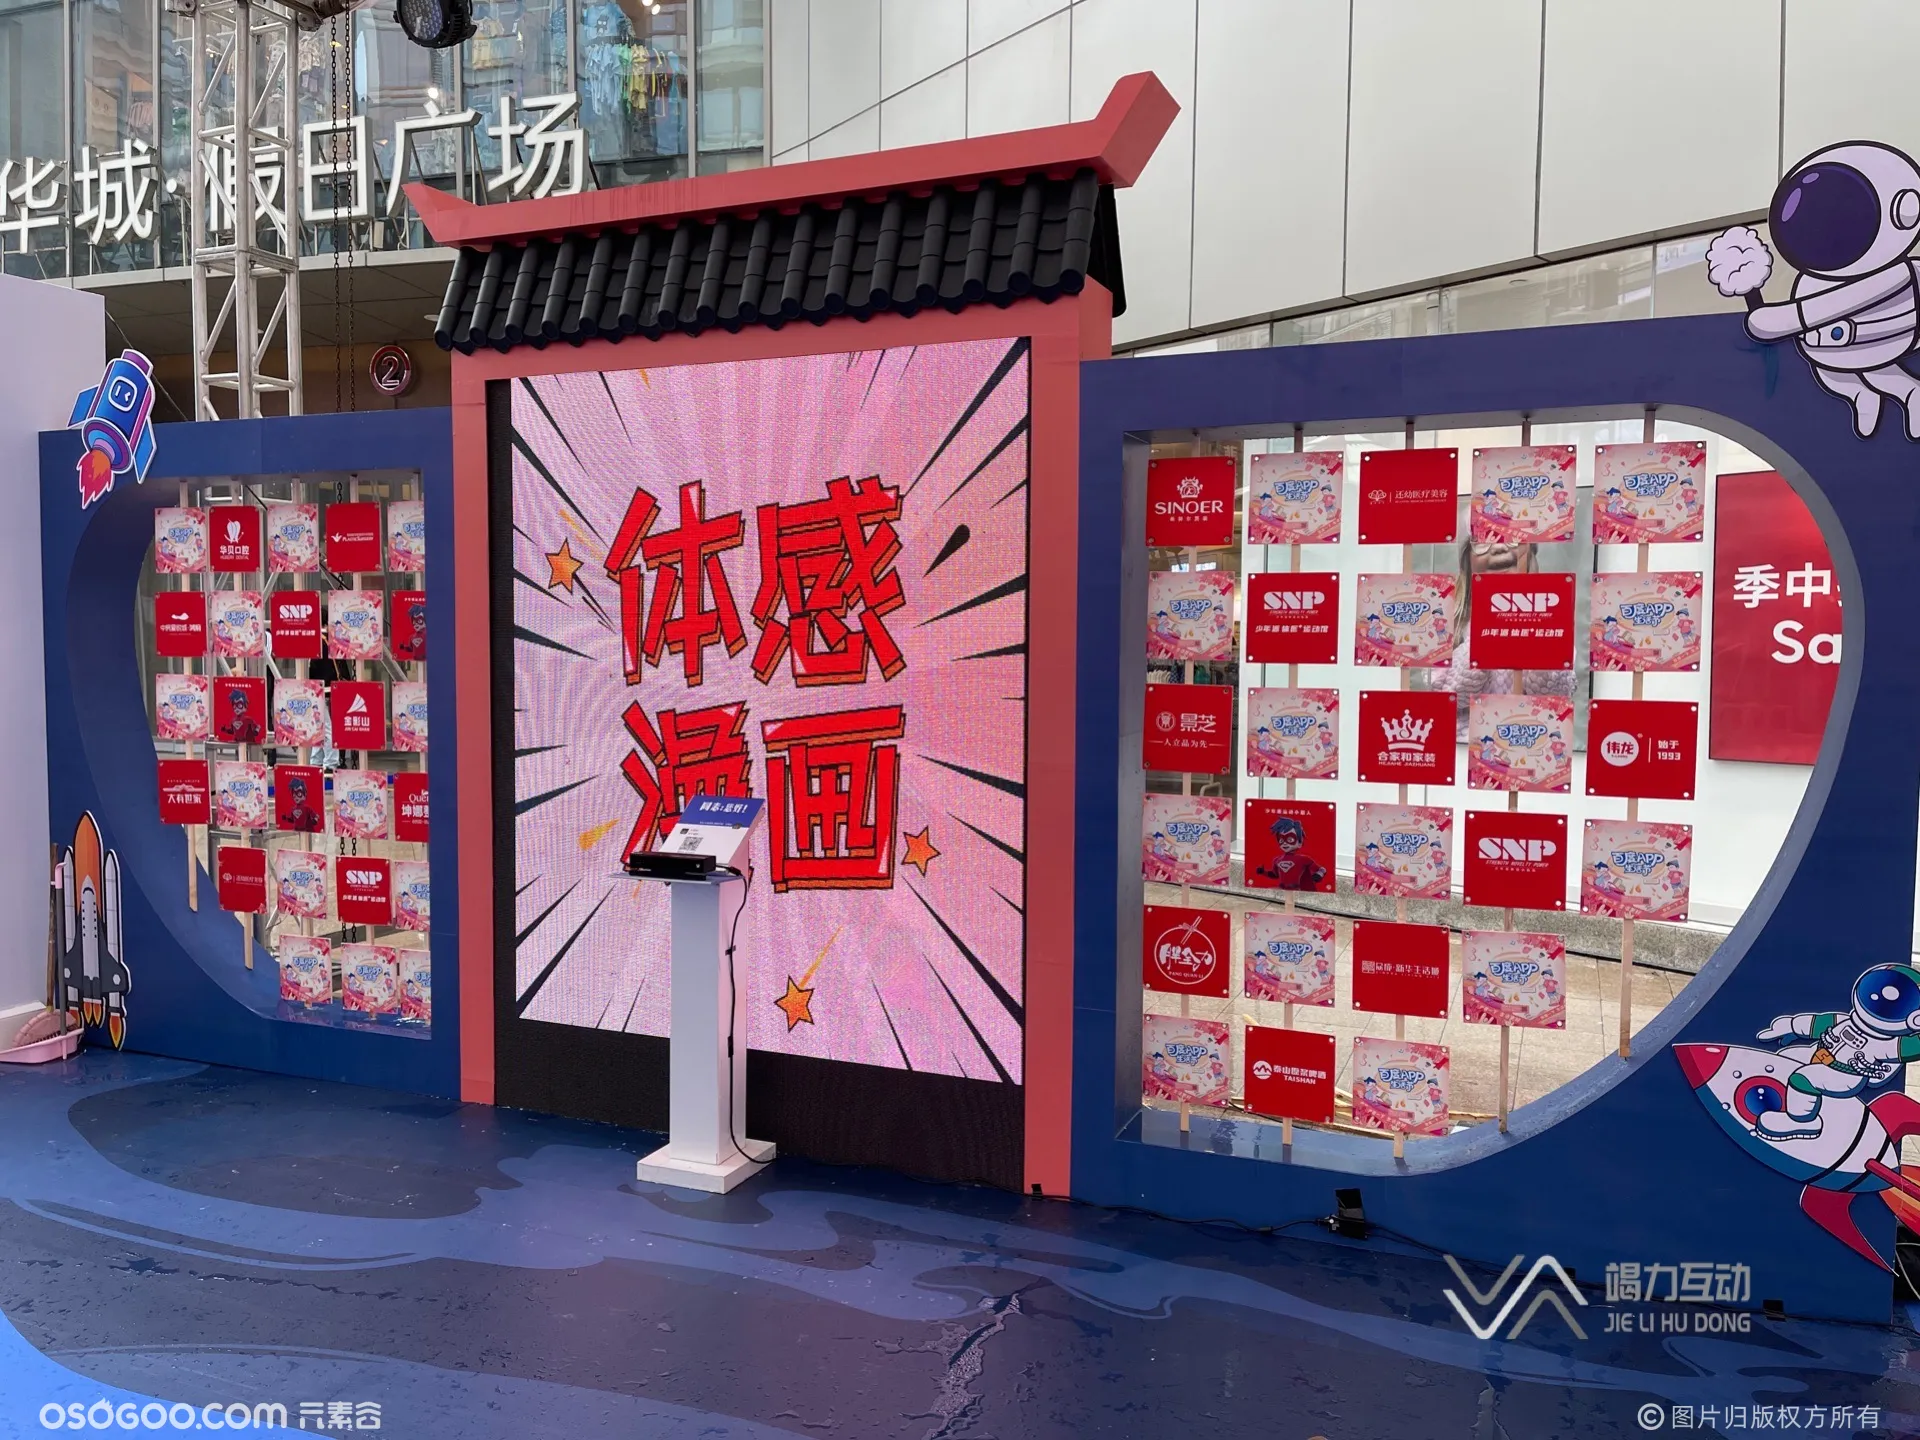 潍坊站百度APP节/体感漫画机互动大屏互动点燃现场